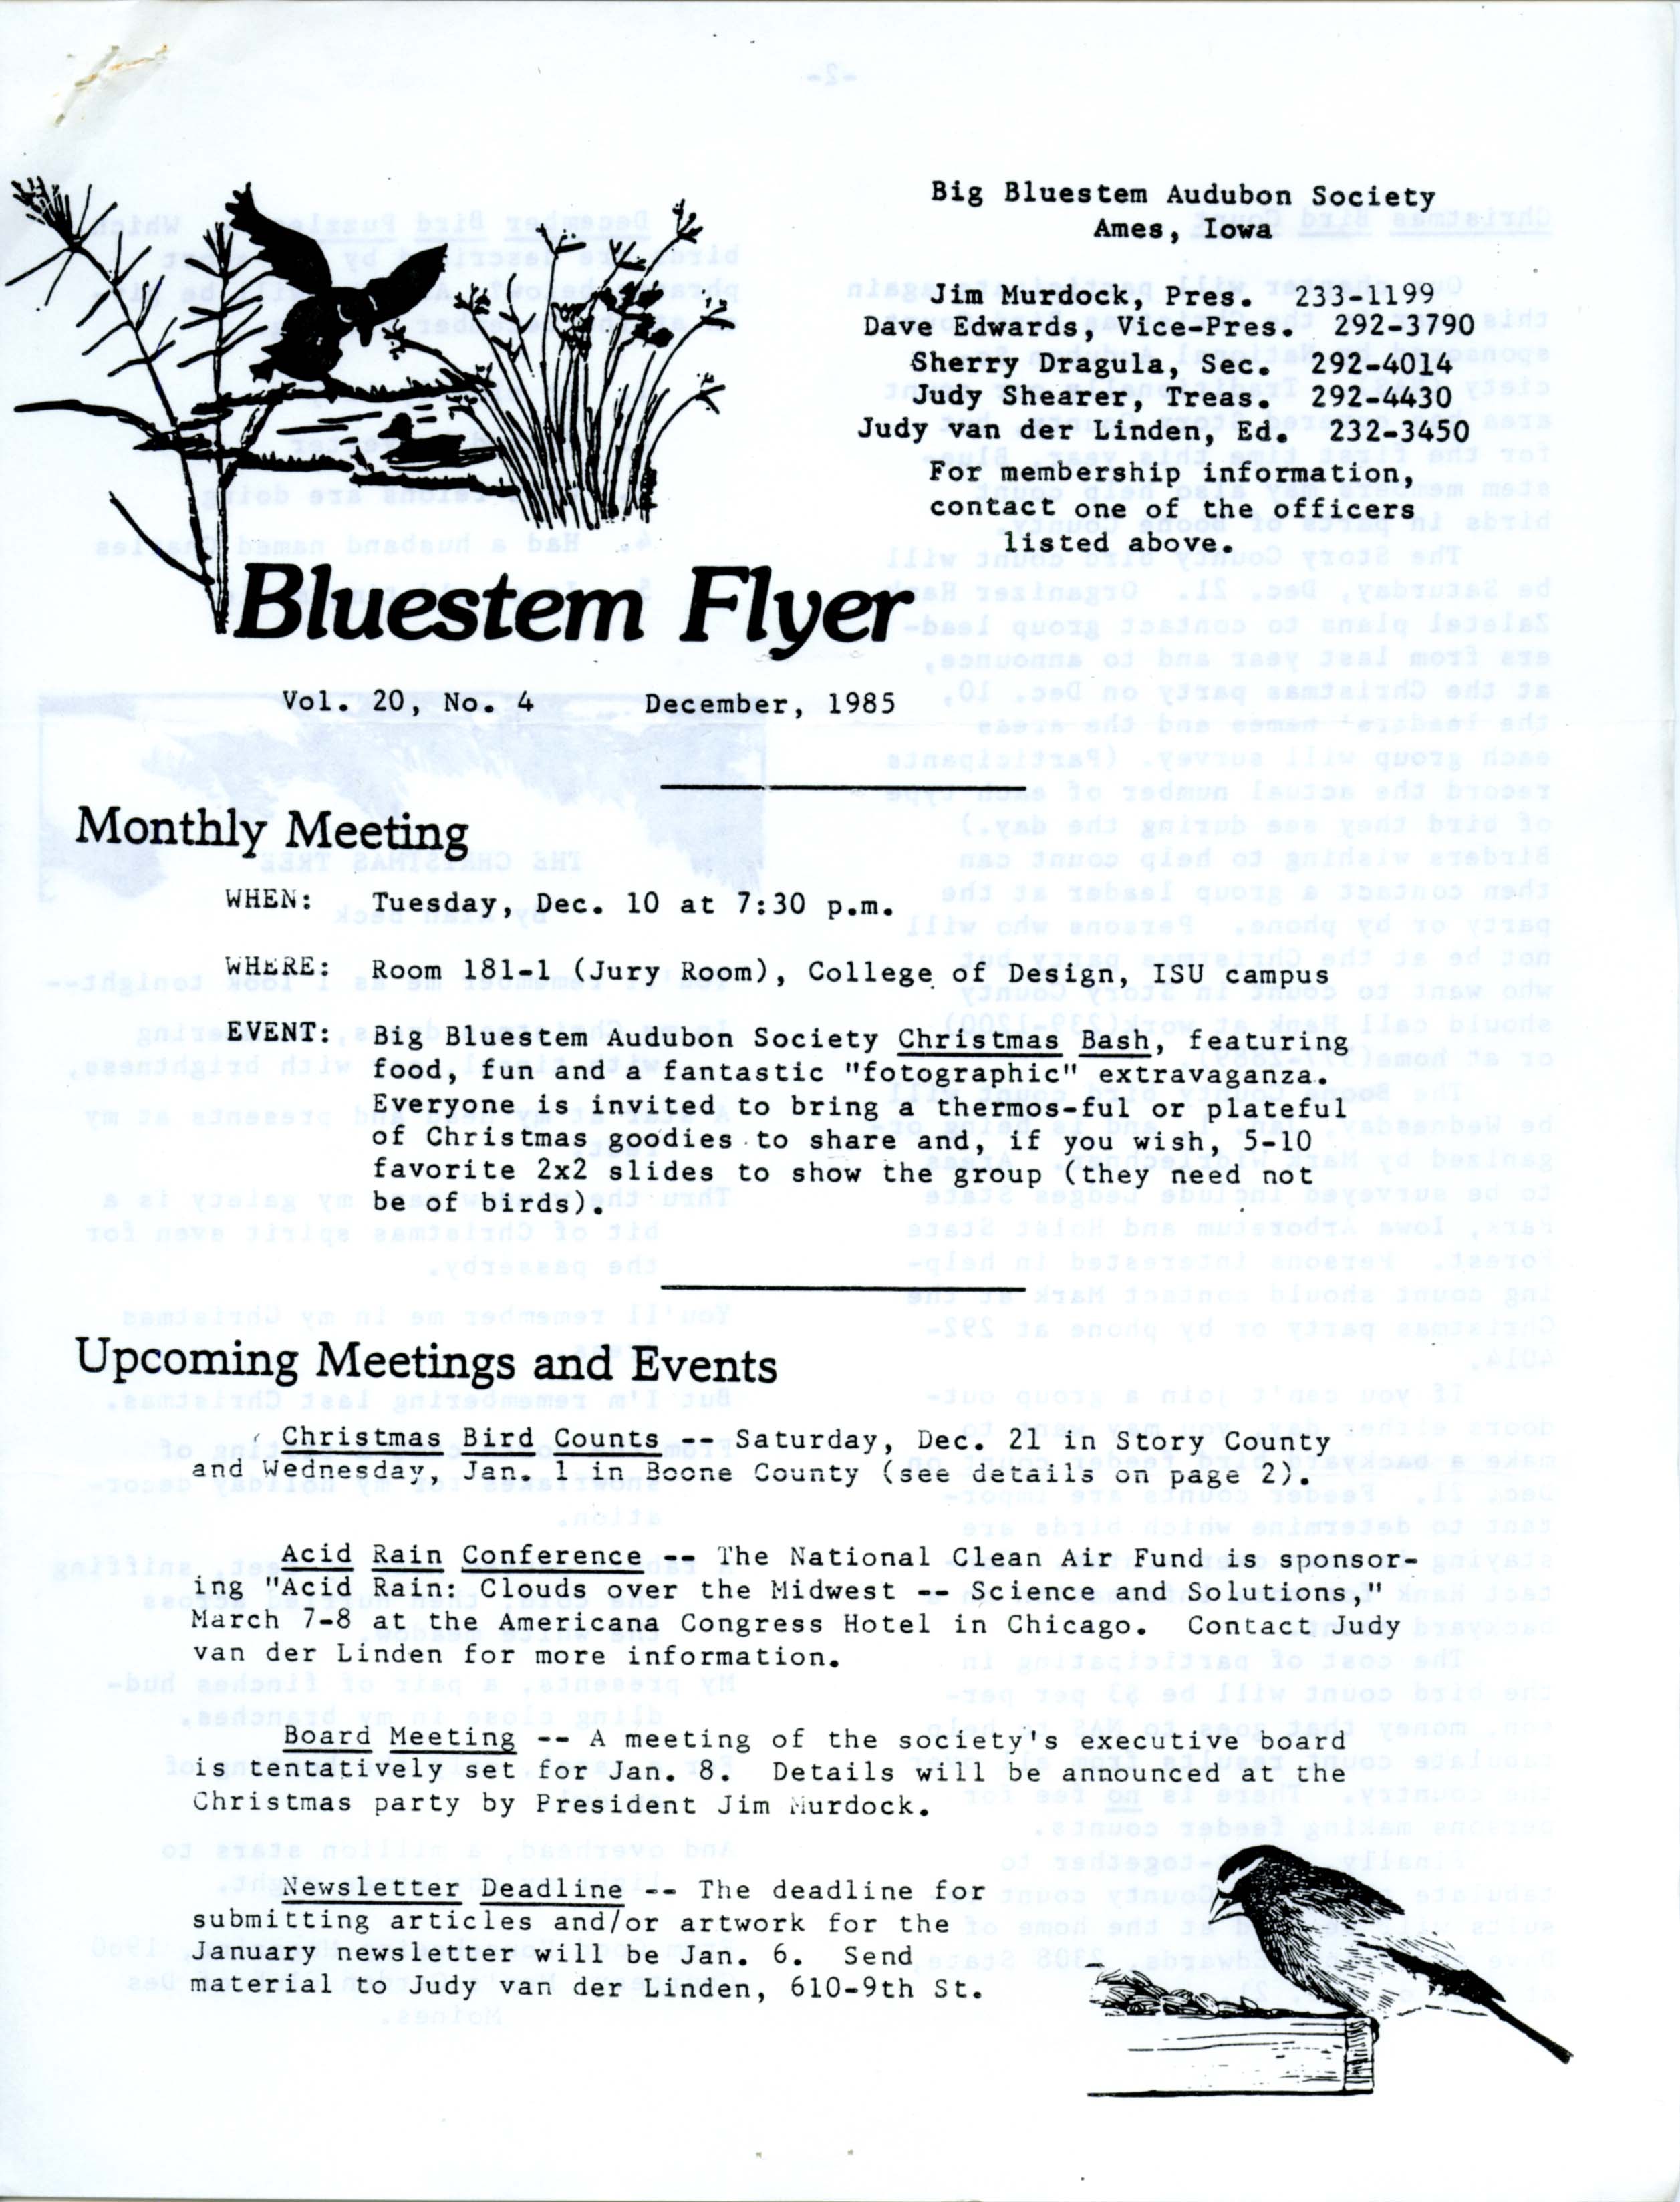 Bluestem Flyer, Volume 20, Number 4, December 1985